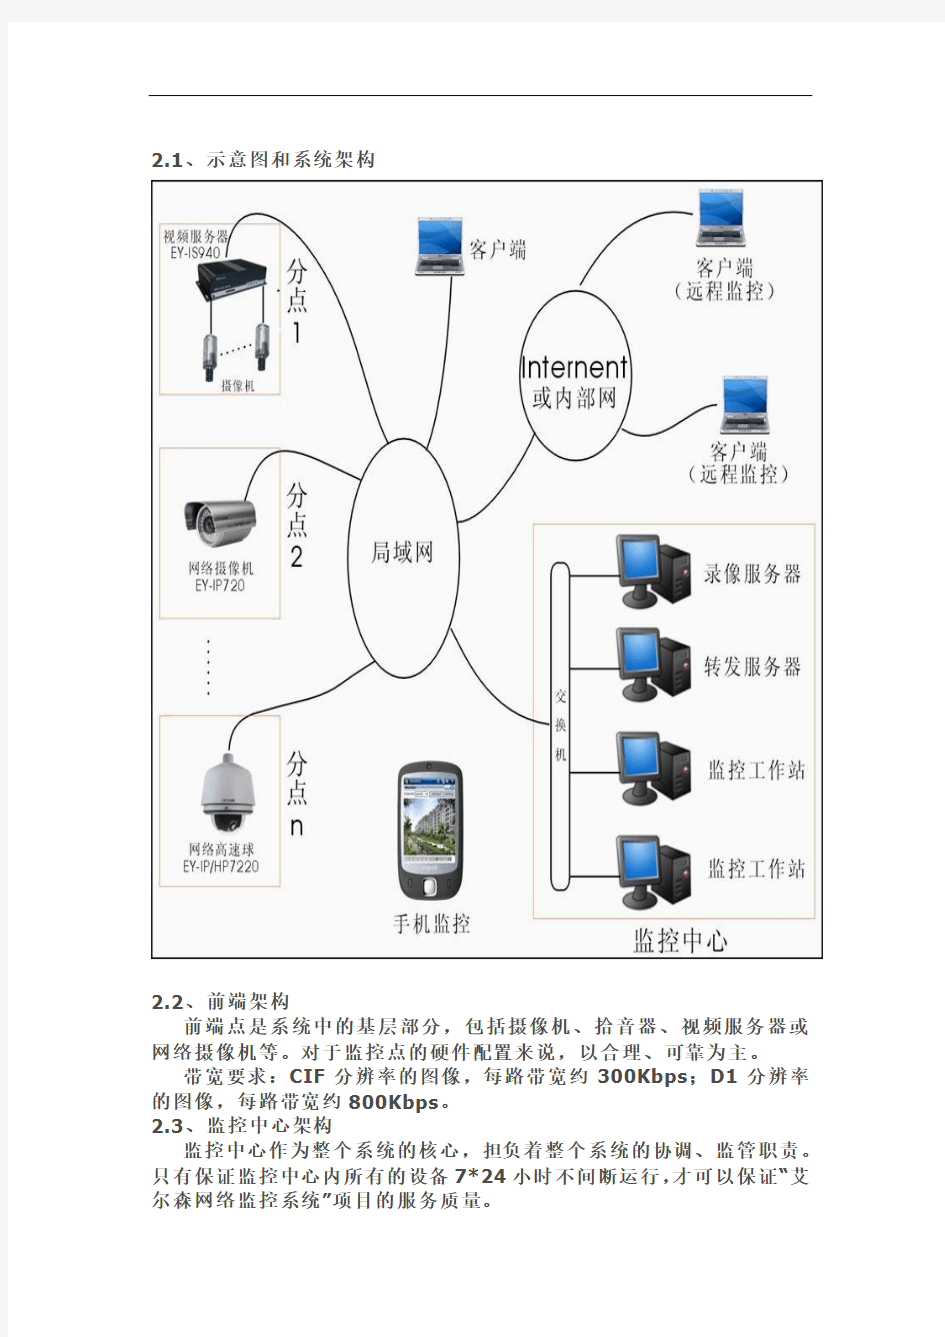 大中型企业网络监控系统方案(内网+外网)